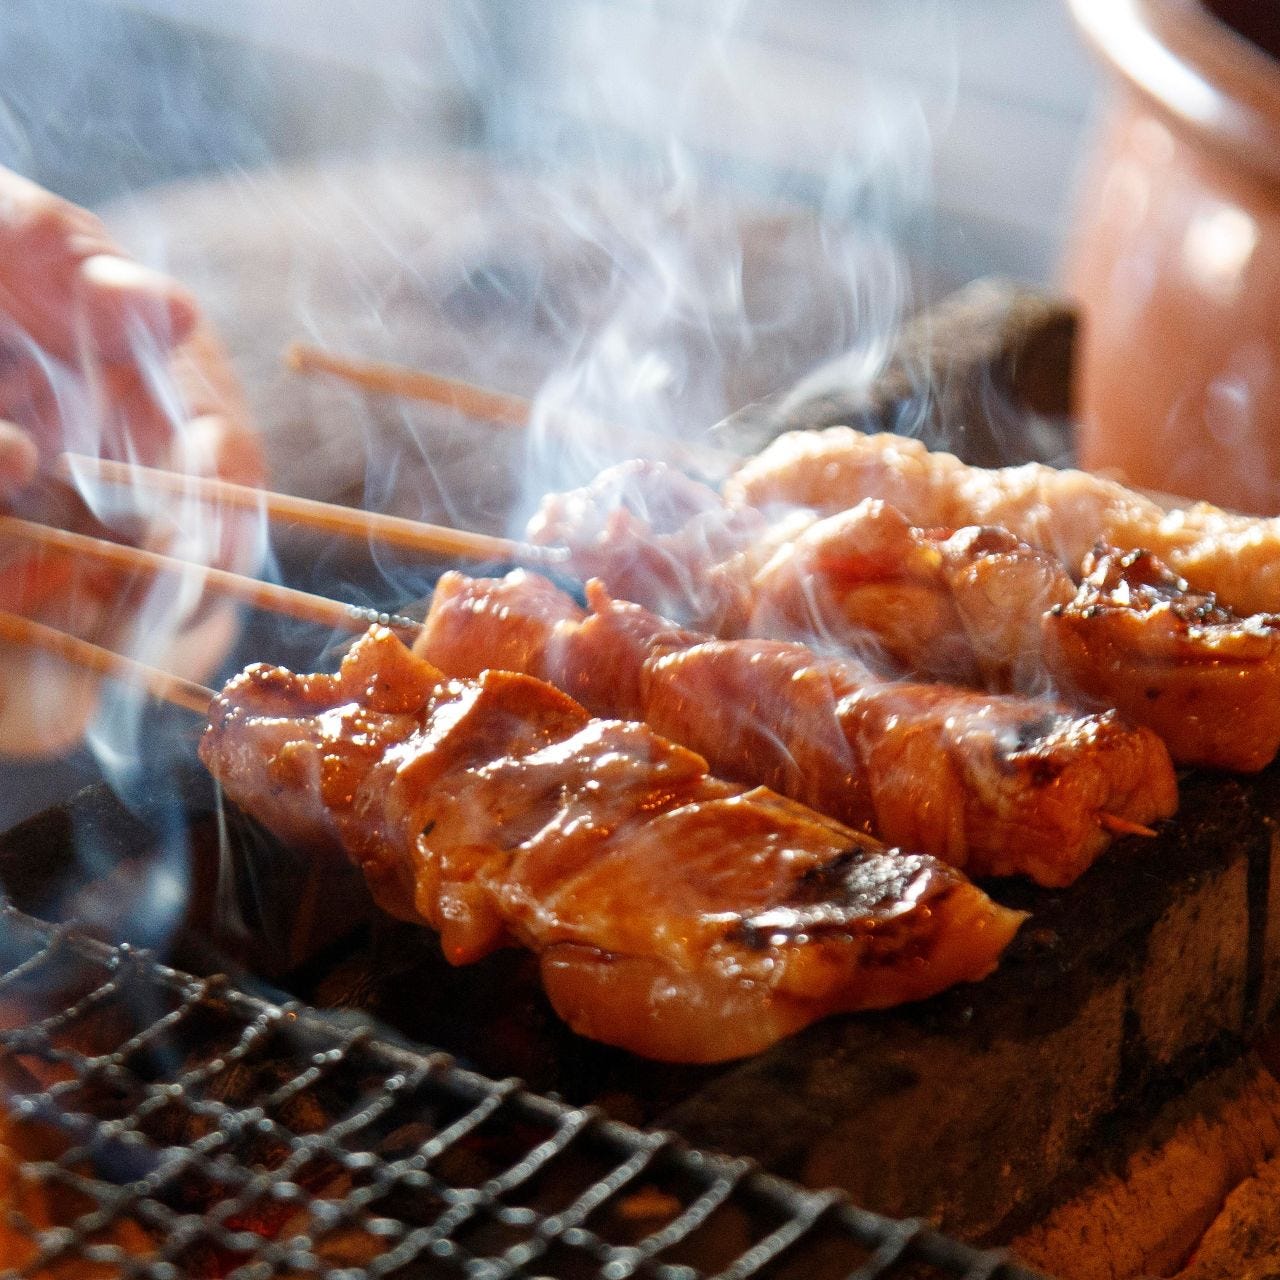 和牛肉寿司と九州地鶏焼き鳥の食べ放題×完全個室 食佑衛門新橋店